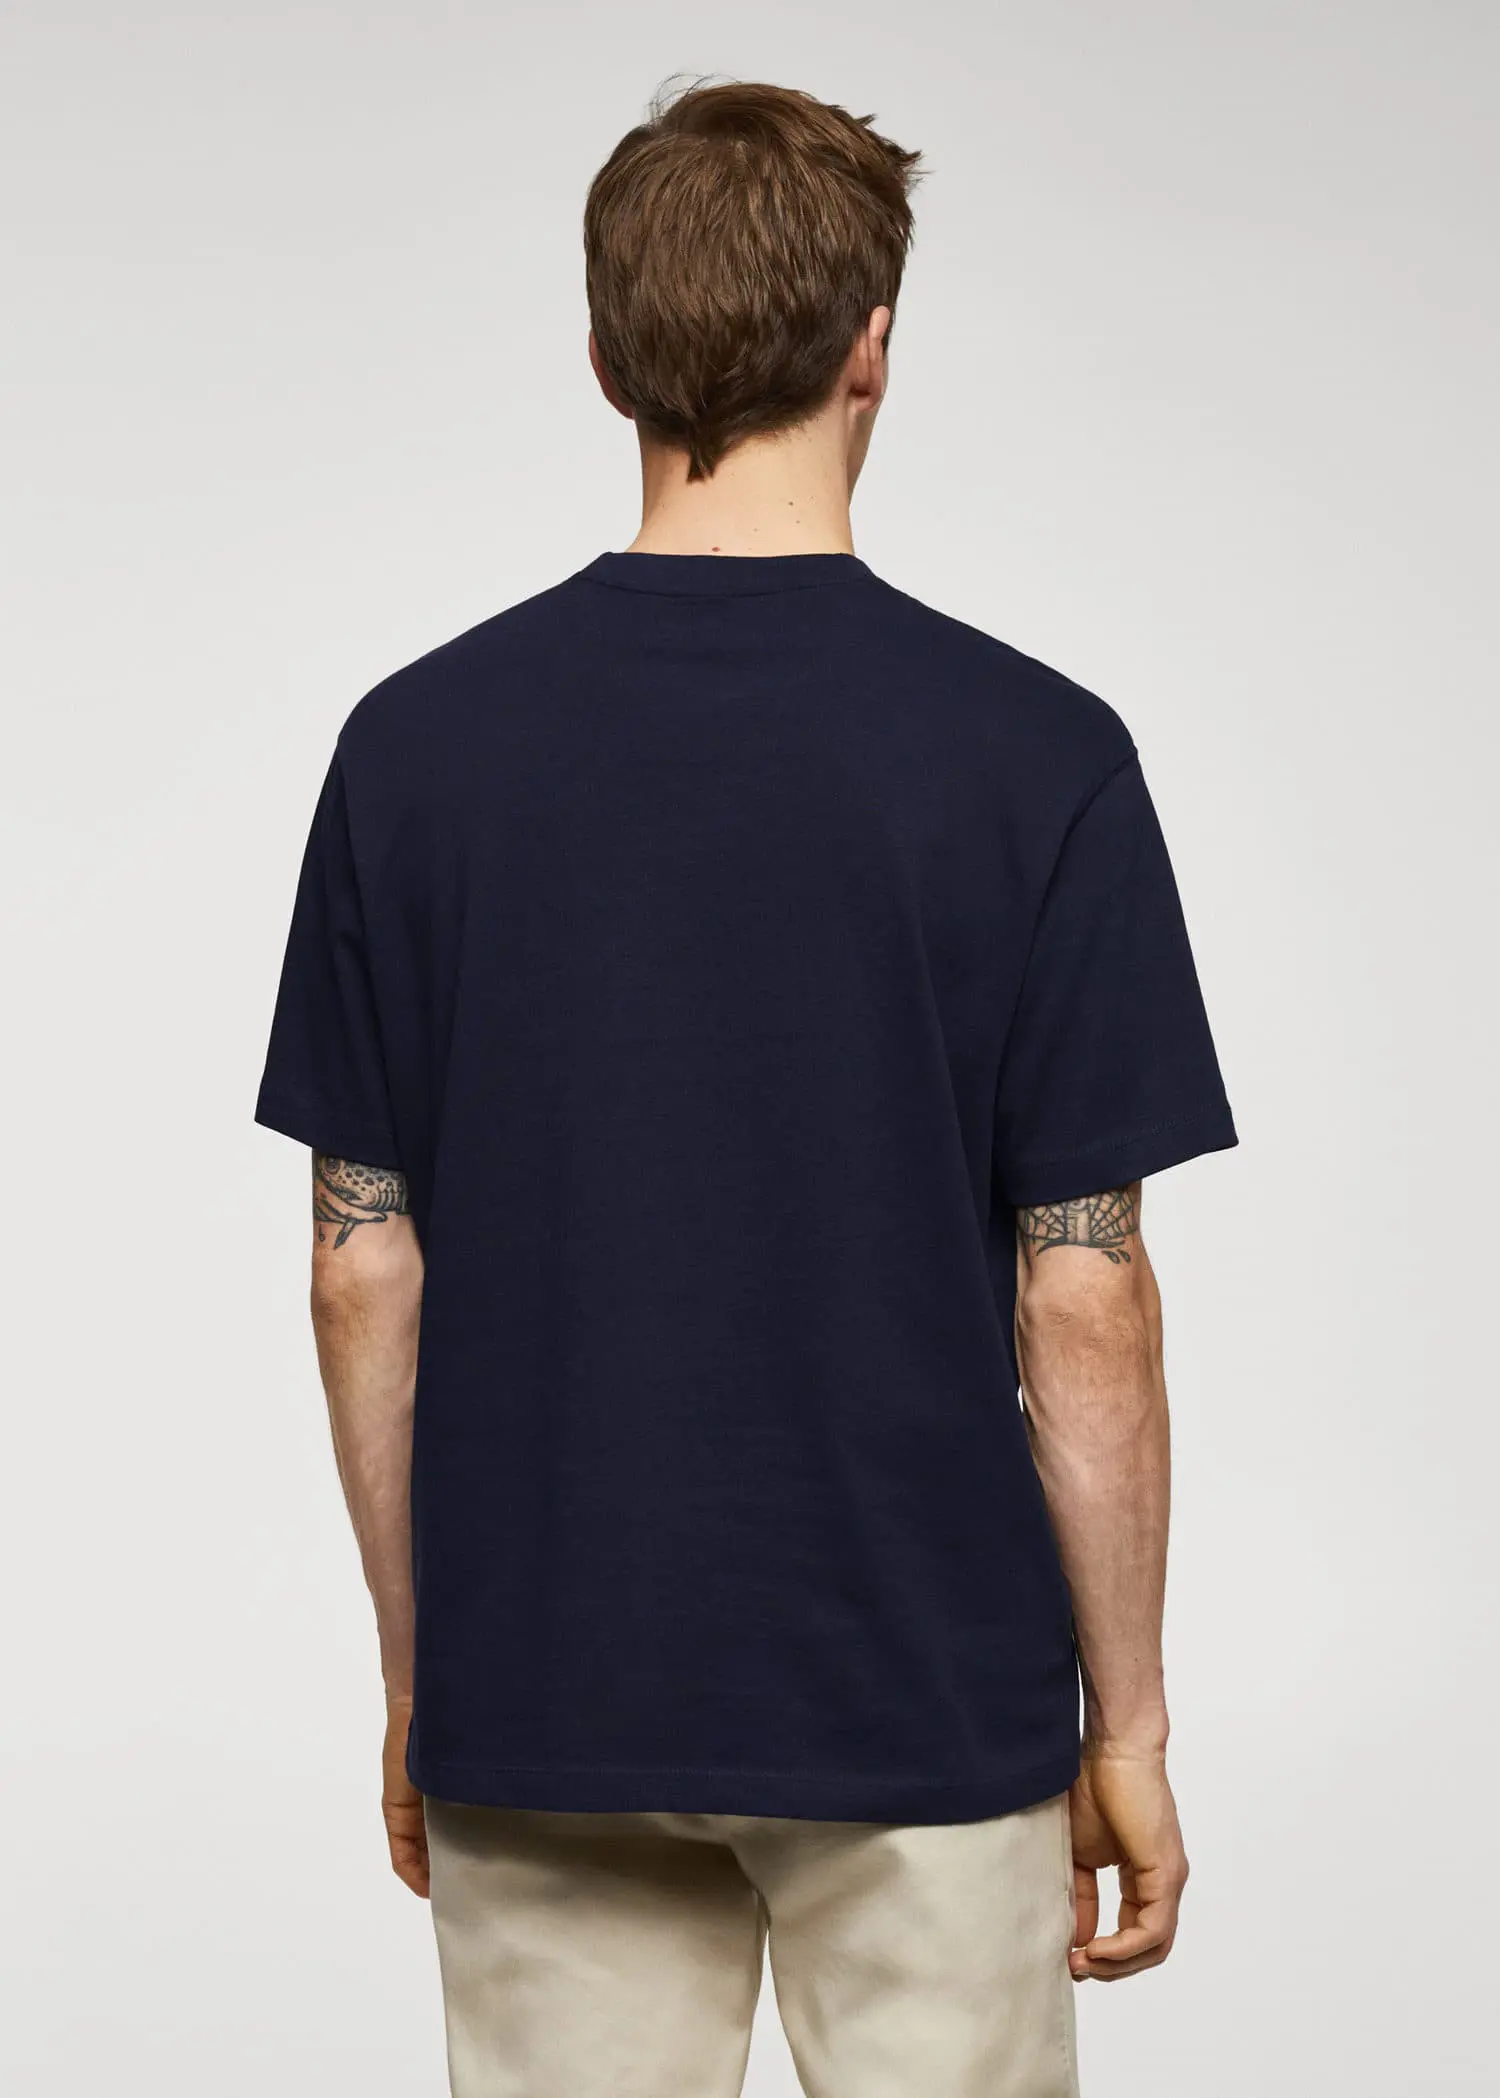 Mango T-shirt básica de 100% algodão relaxed fit. 3